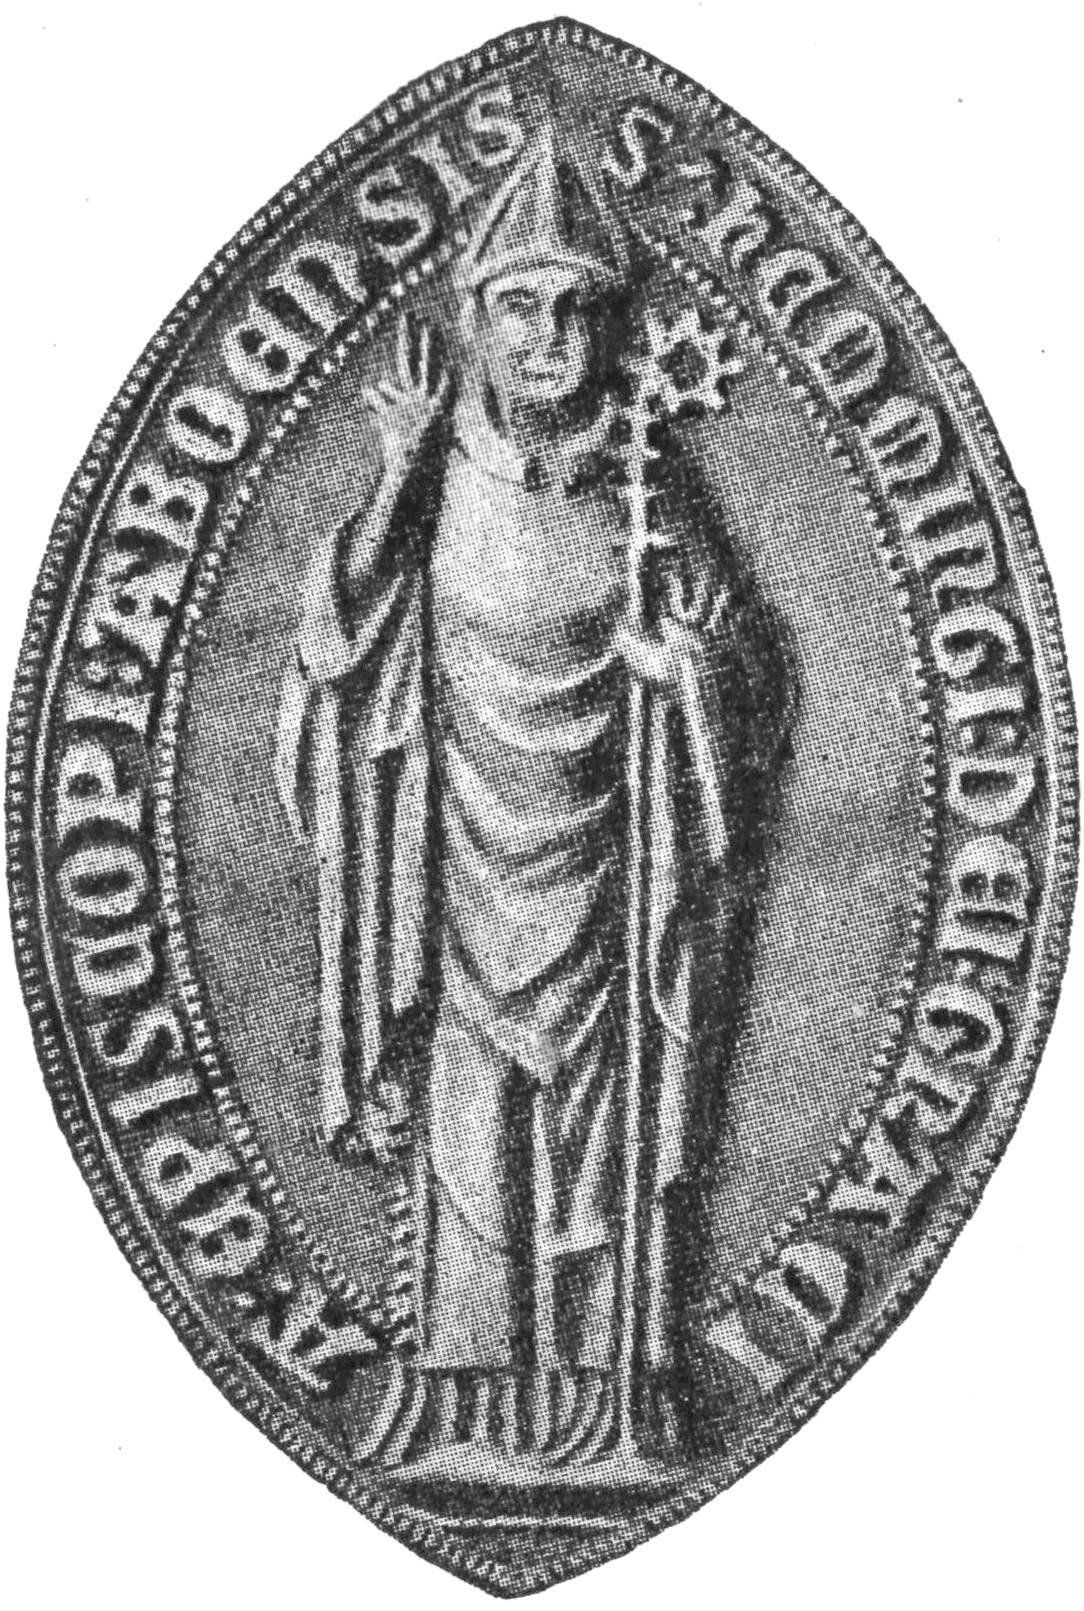 Keskiaikainen sinetti, jossa piispa Hemming seisomassa sormet siunaavassa asennossa